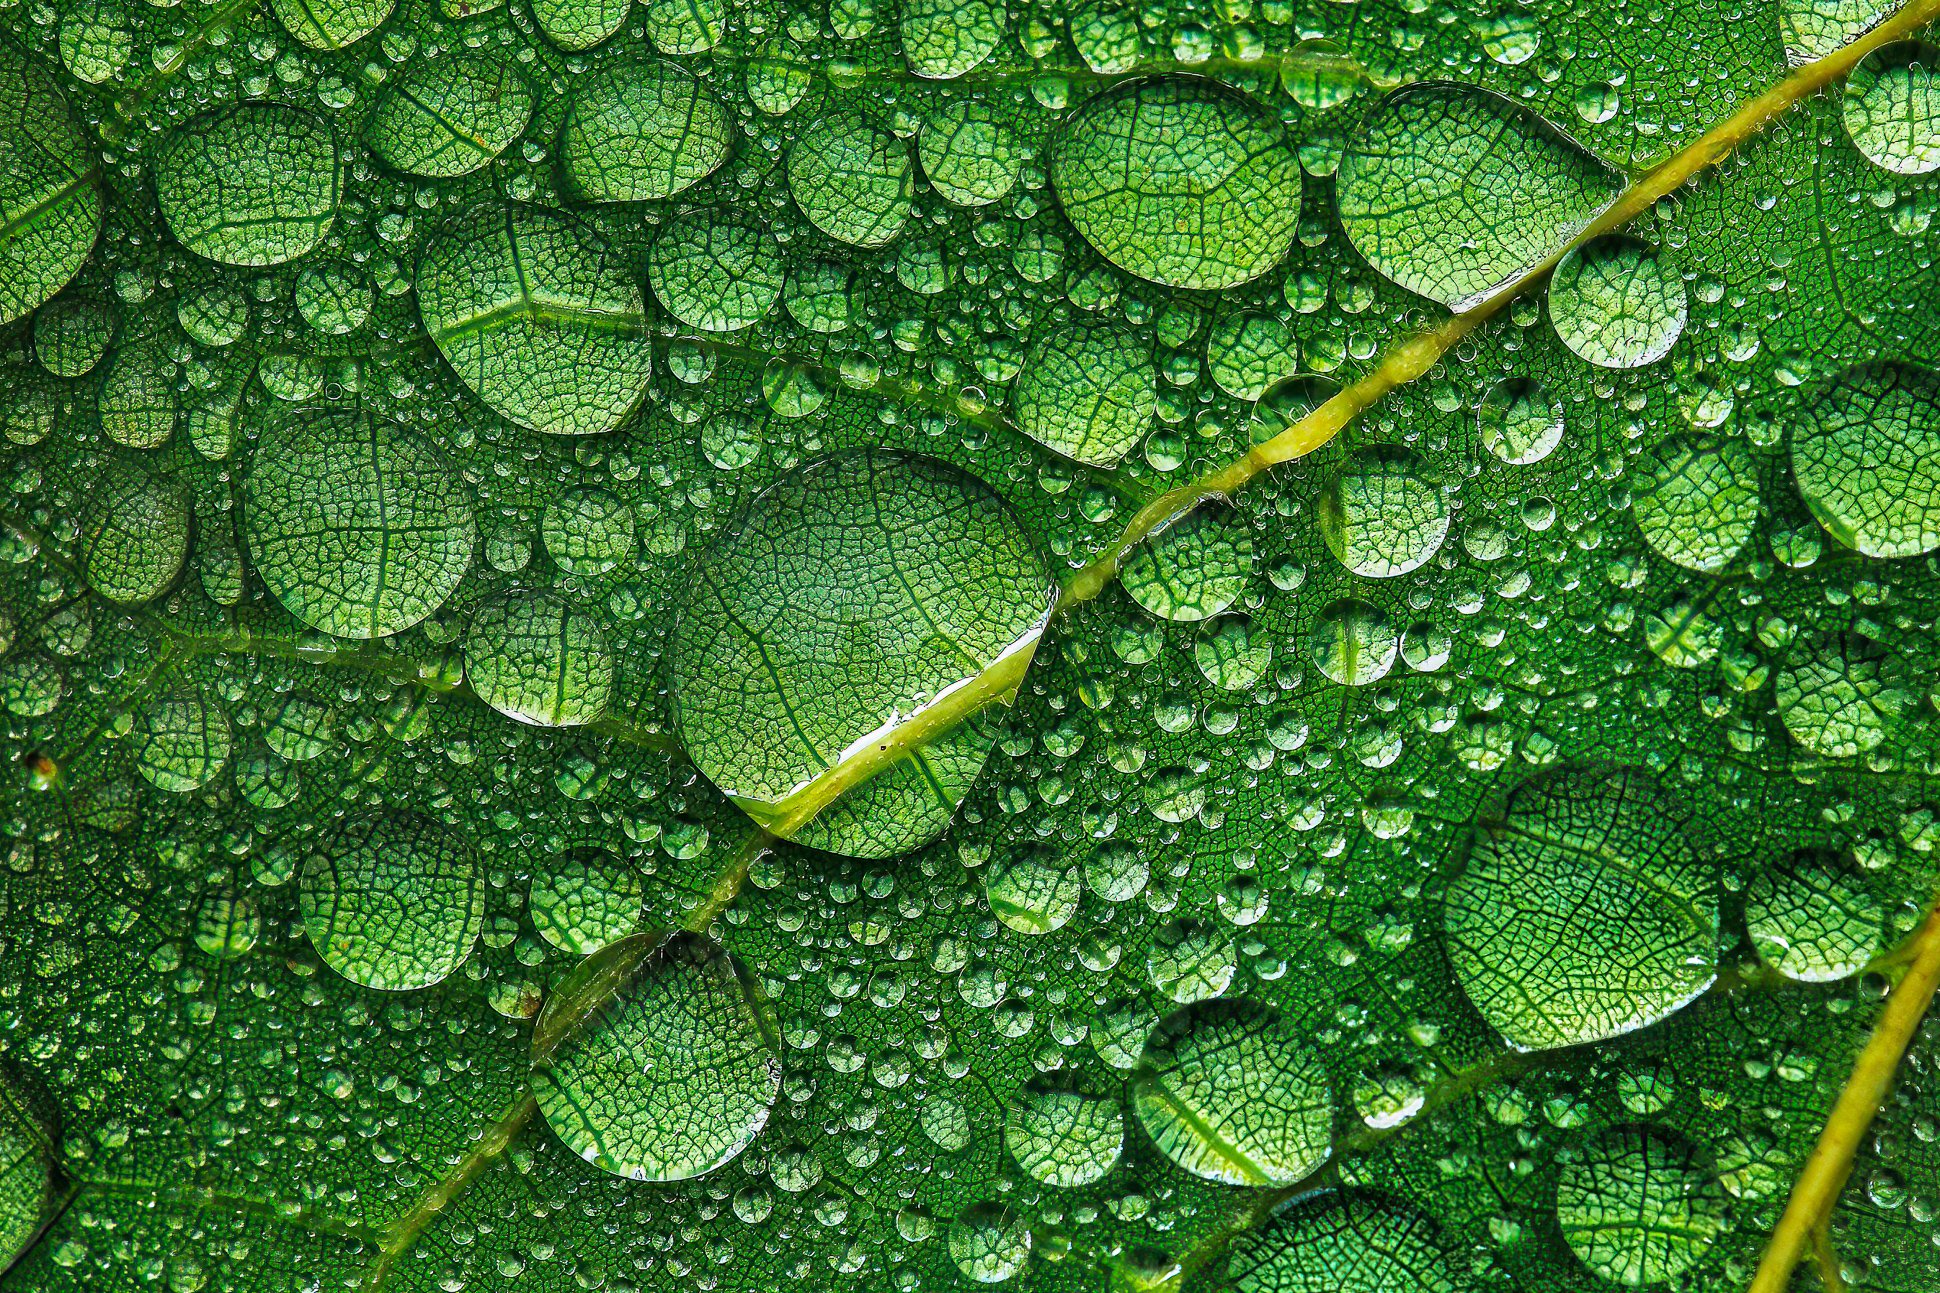 Raindrops on leaf - HM